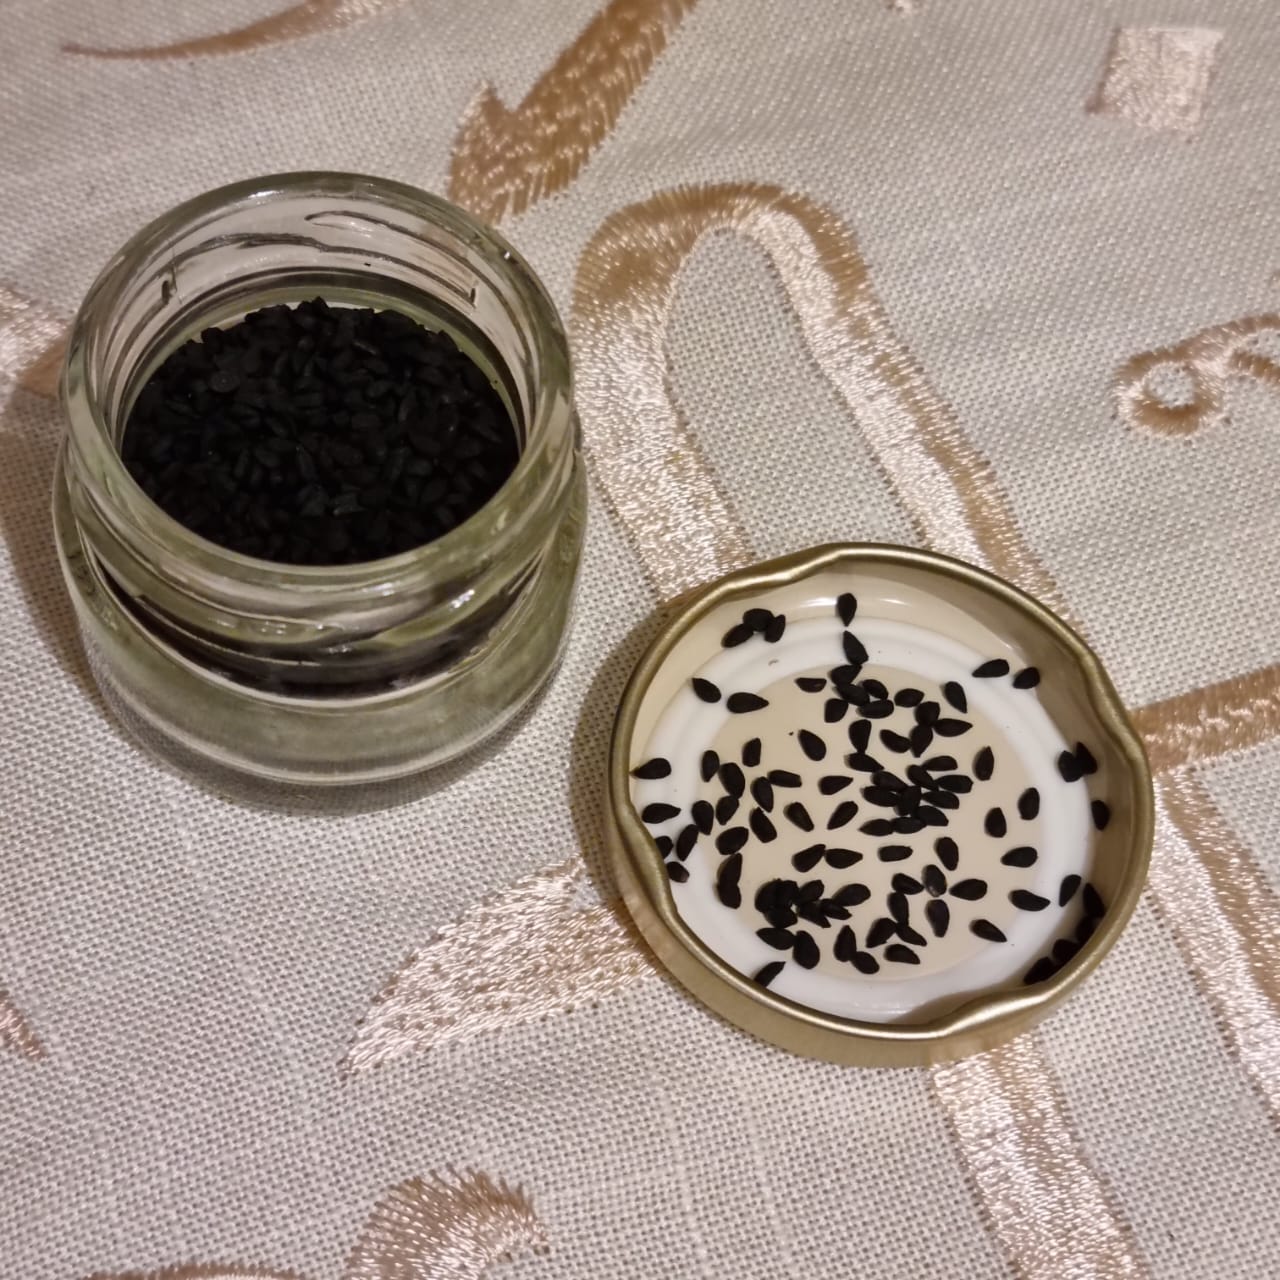 Kulinji (Black Seeds) 10g Glass Jar